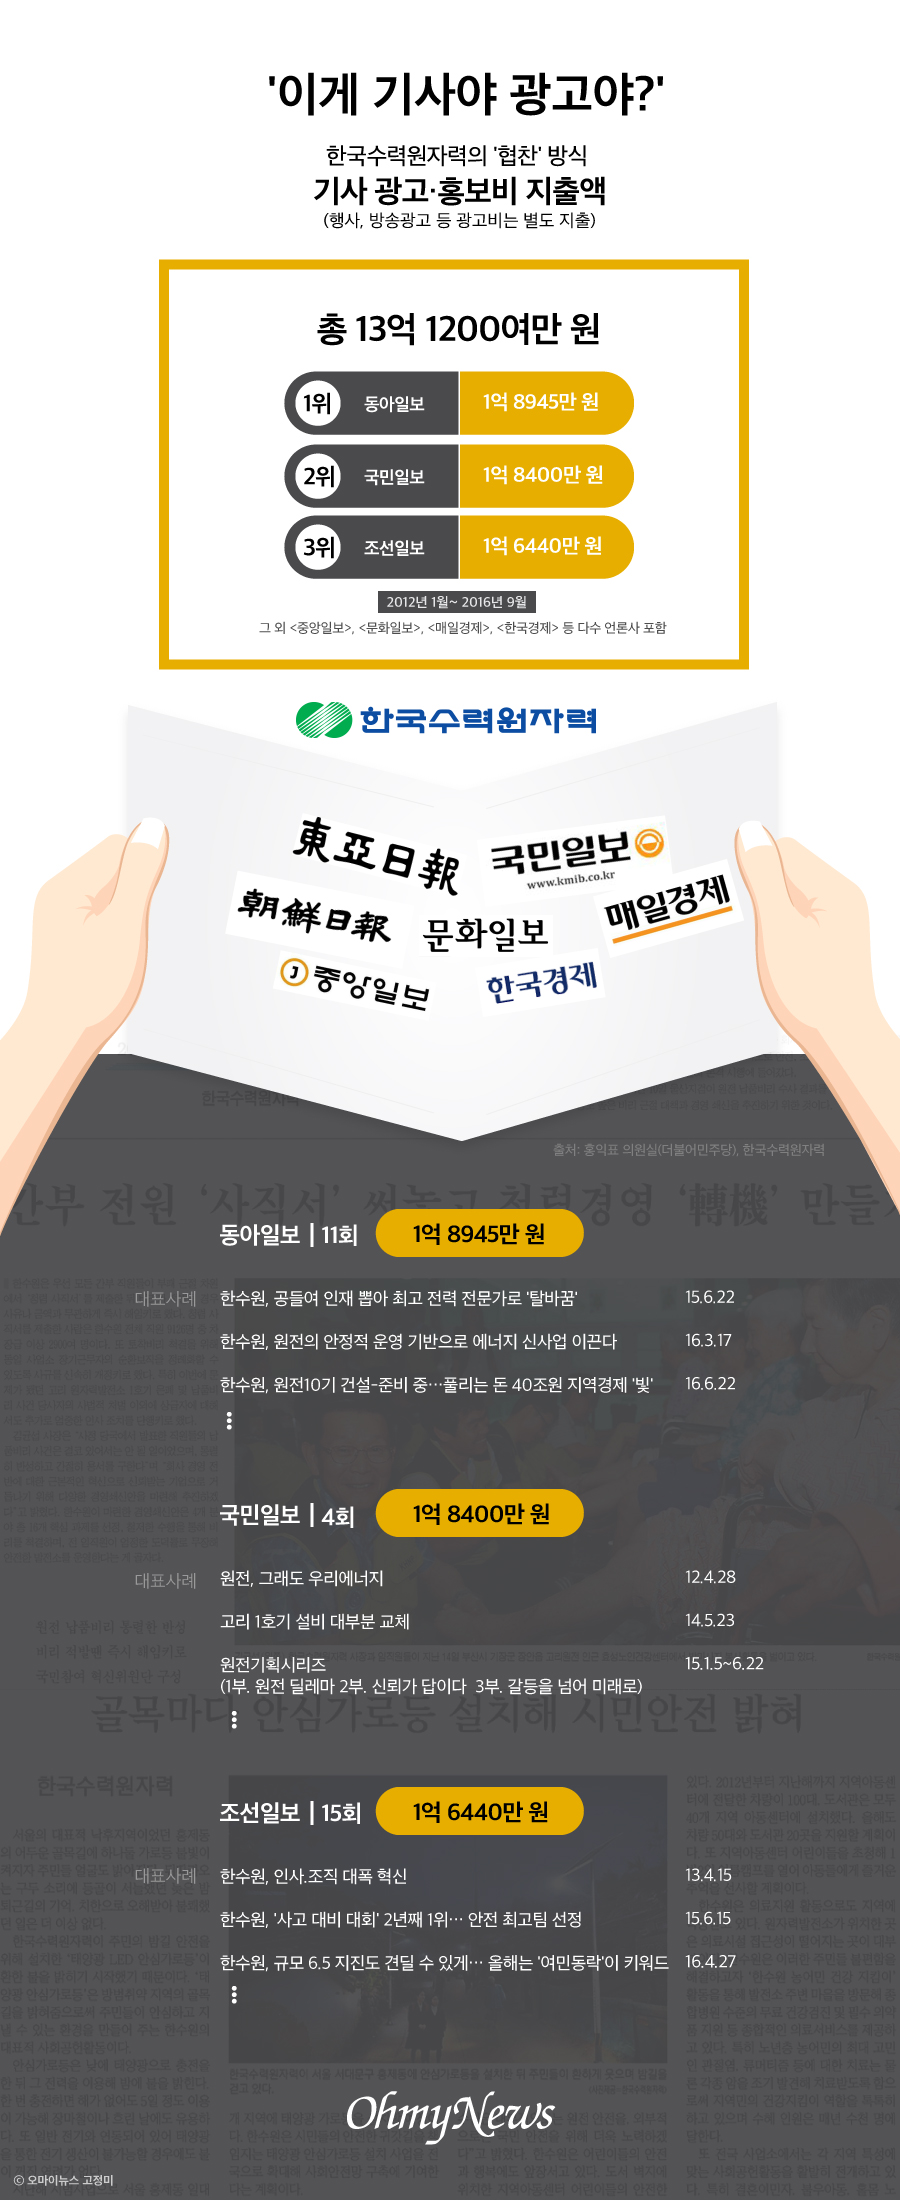 한국수력원자력의 '협찬' 방식 기사 광고·홍보비 지출액